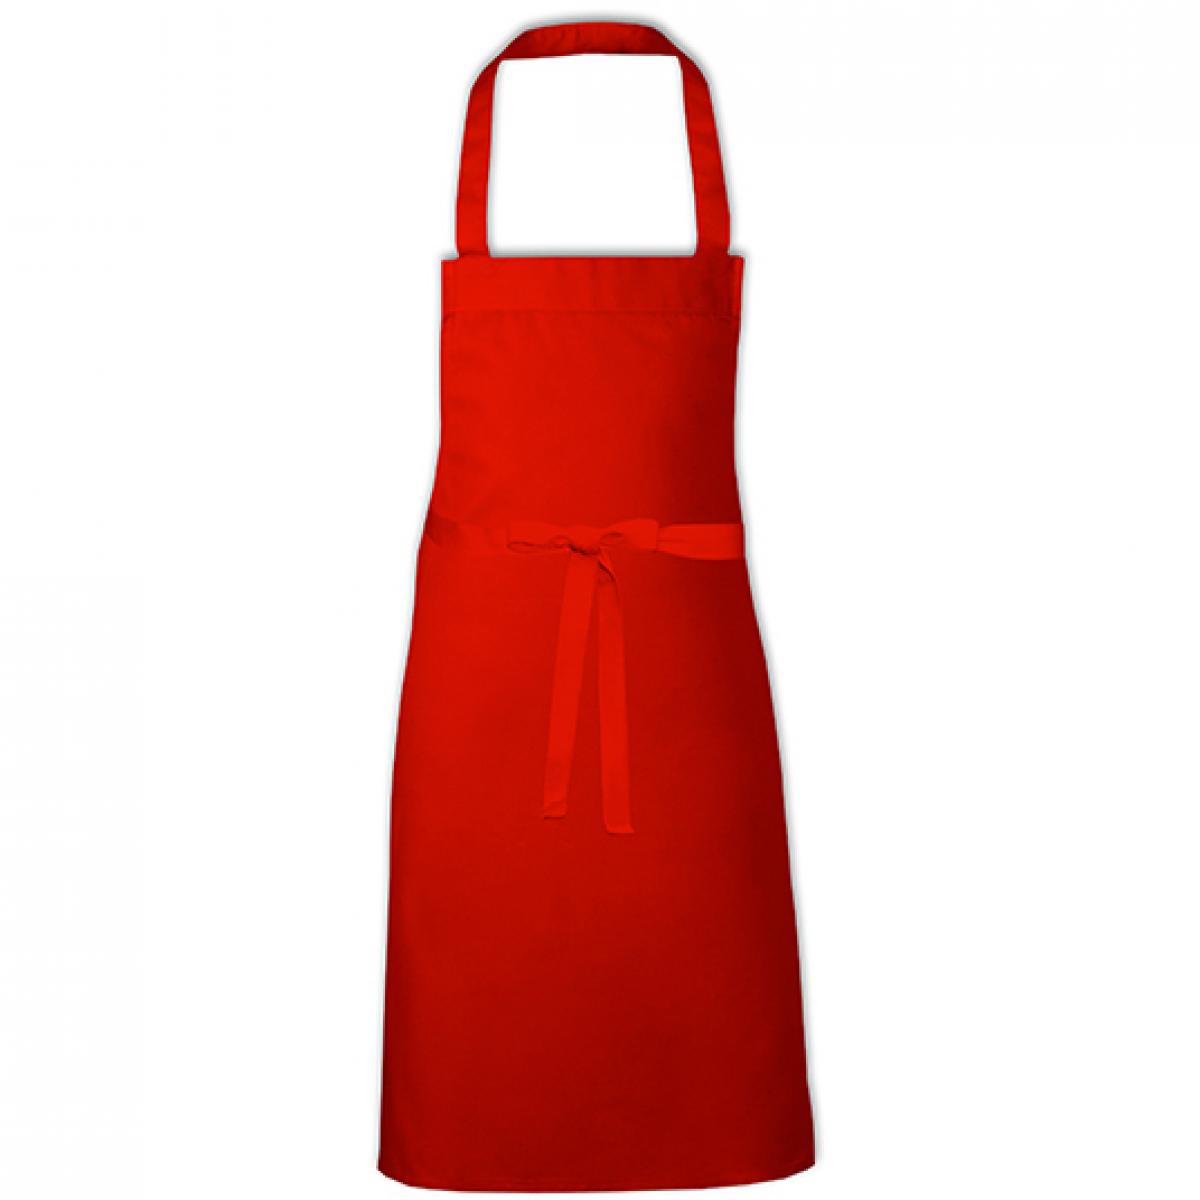 Hersteller: Link Kitchen Wear Herstellernummer: BBQC8070 Artikelbezeichnung: Cotton Barbecue Apron - Grillschürze Farbe: Red (ca. Pantone 200)